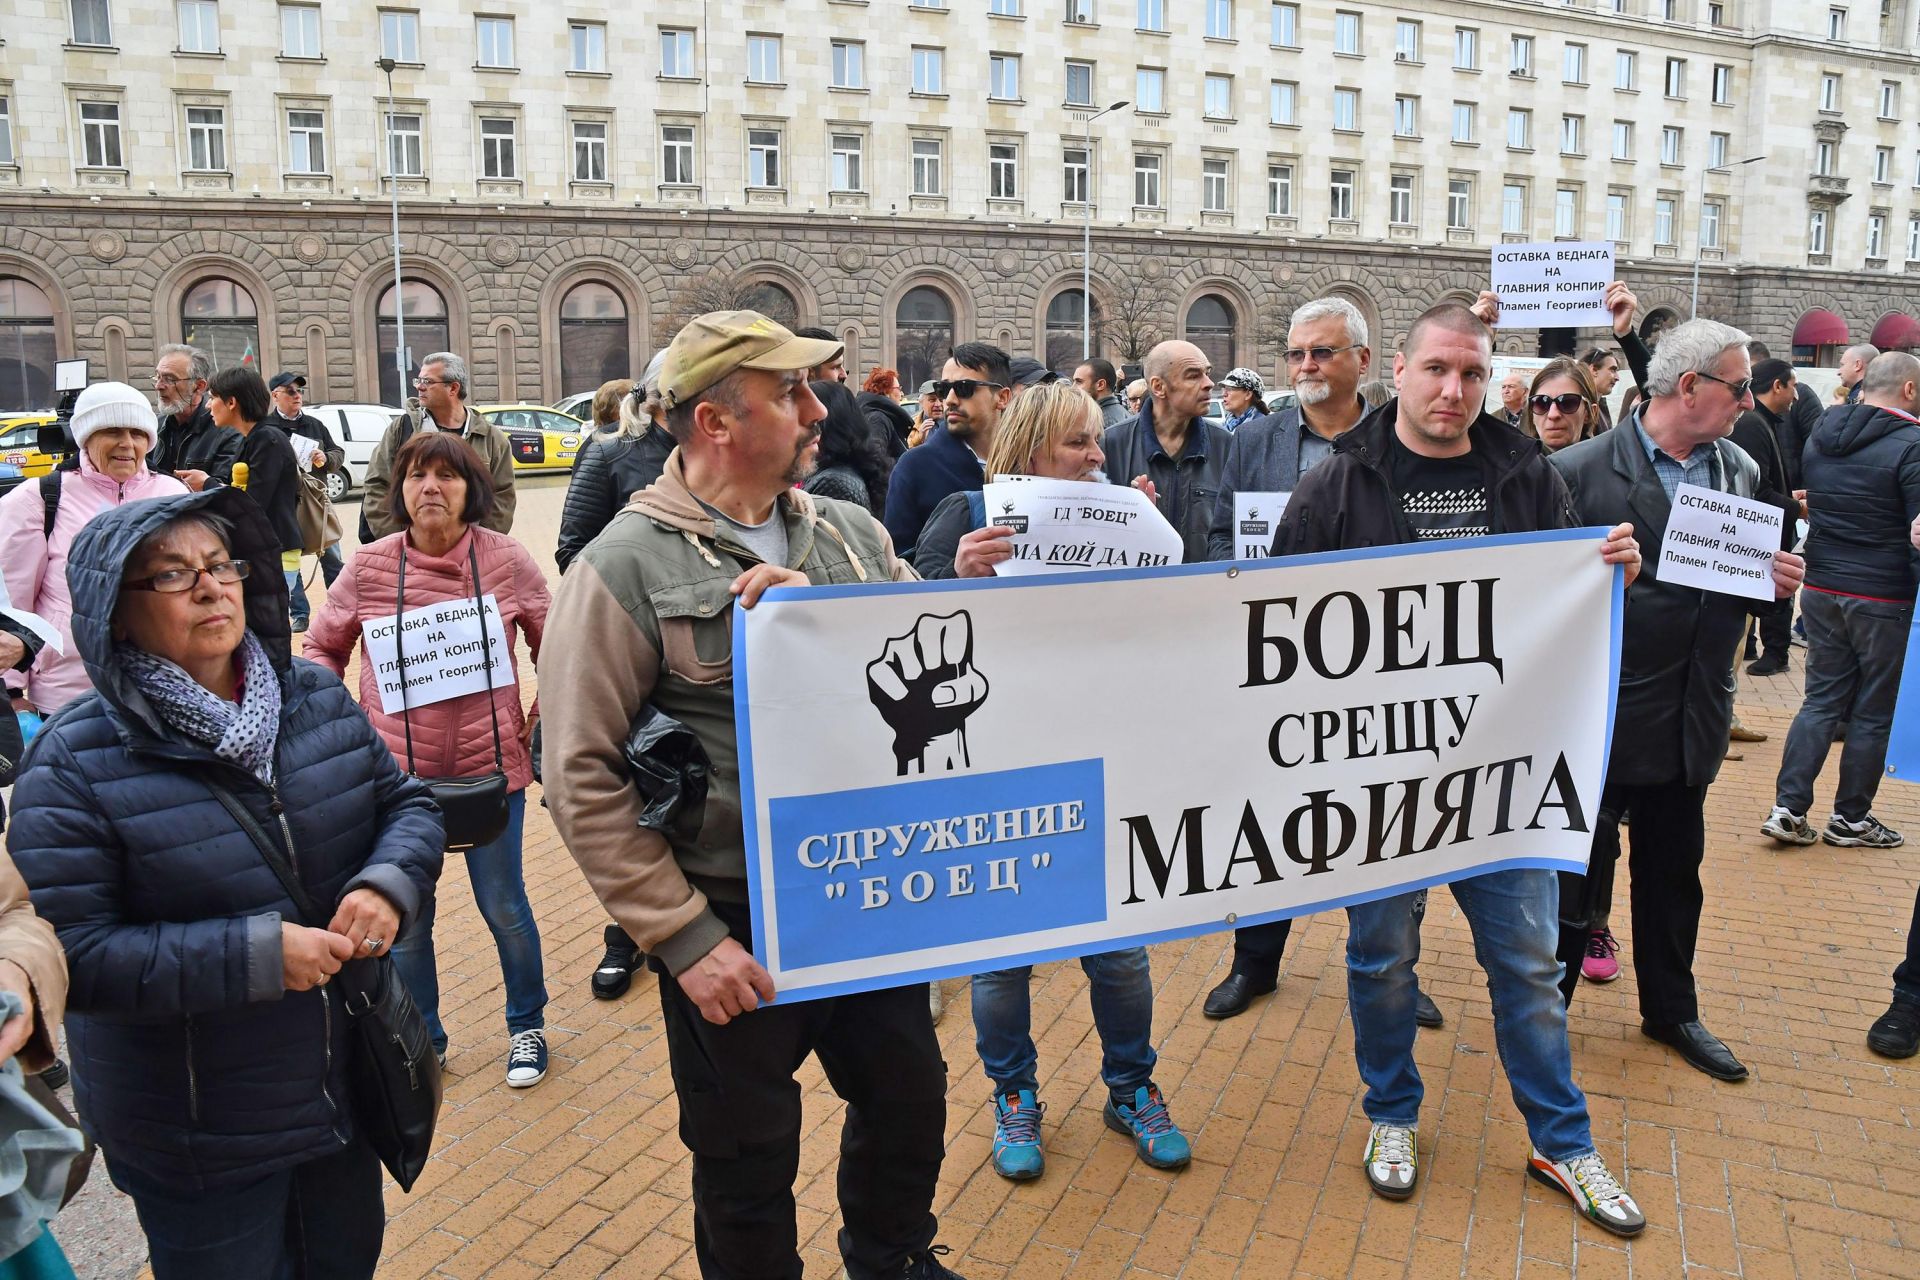 Около 40-50 човека от гражданското сдружение "Боец" излязоха на протест пред Министерски съвет